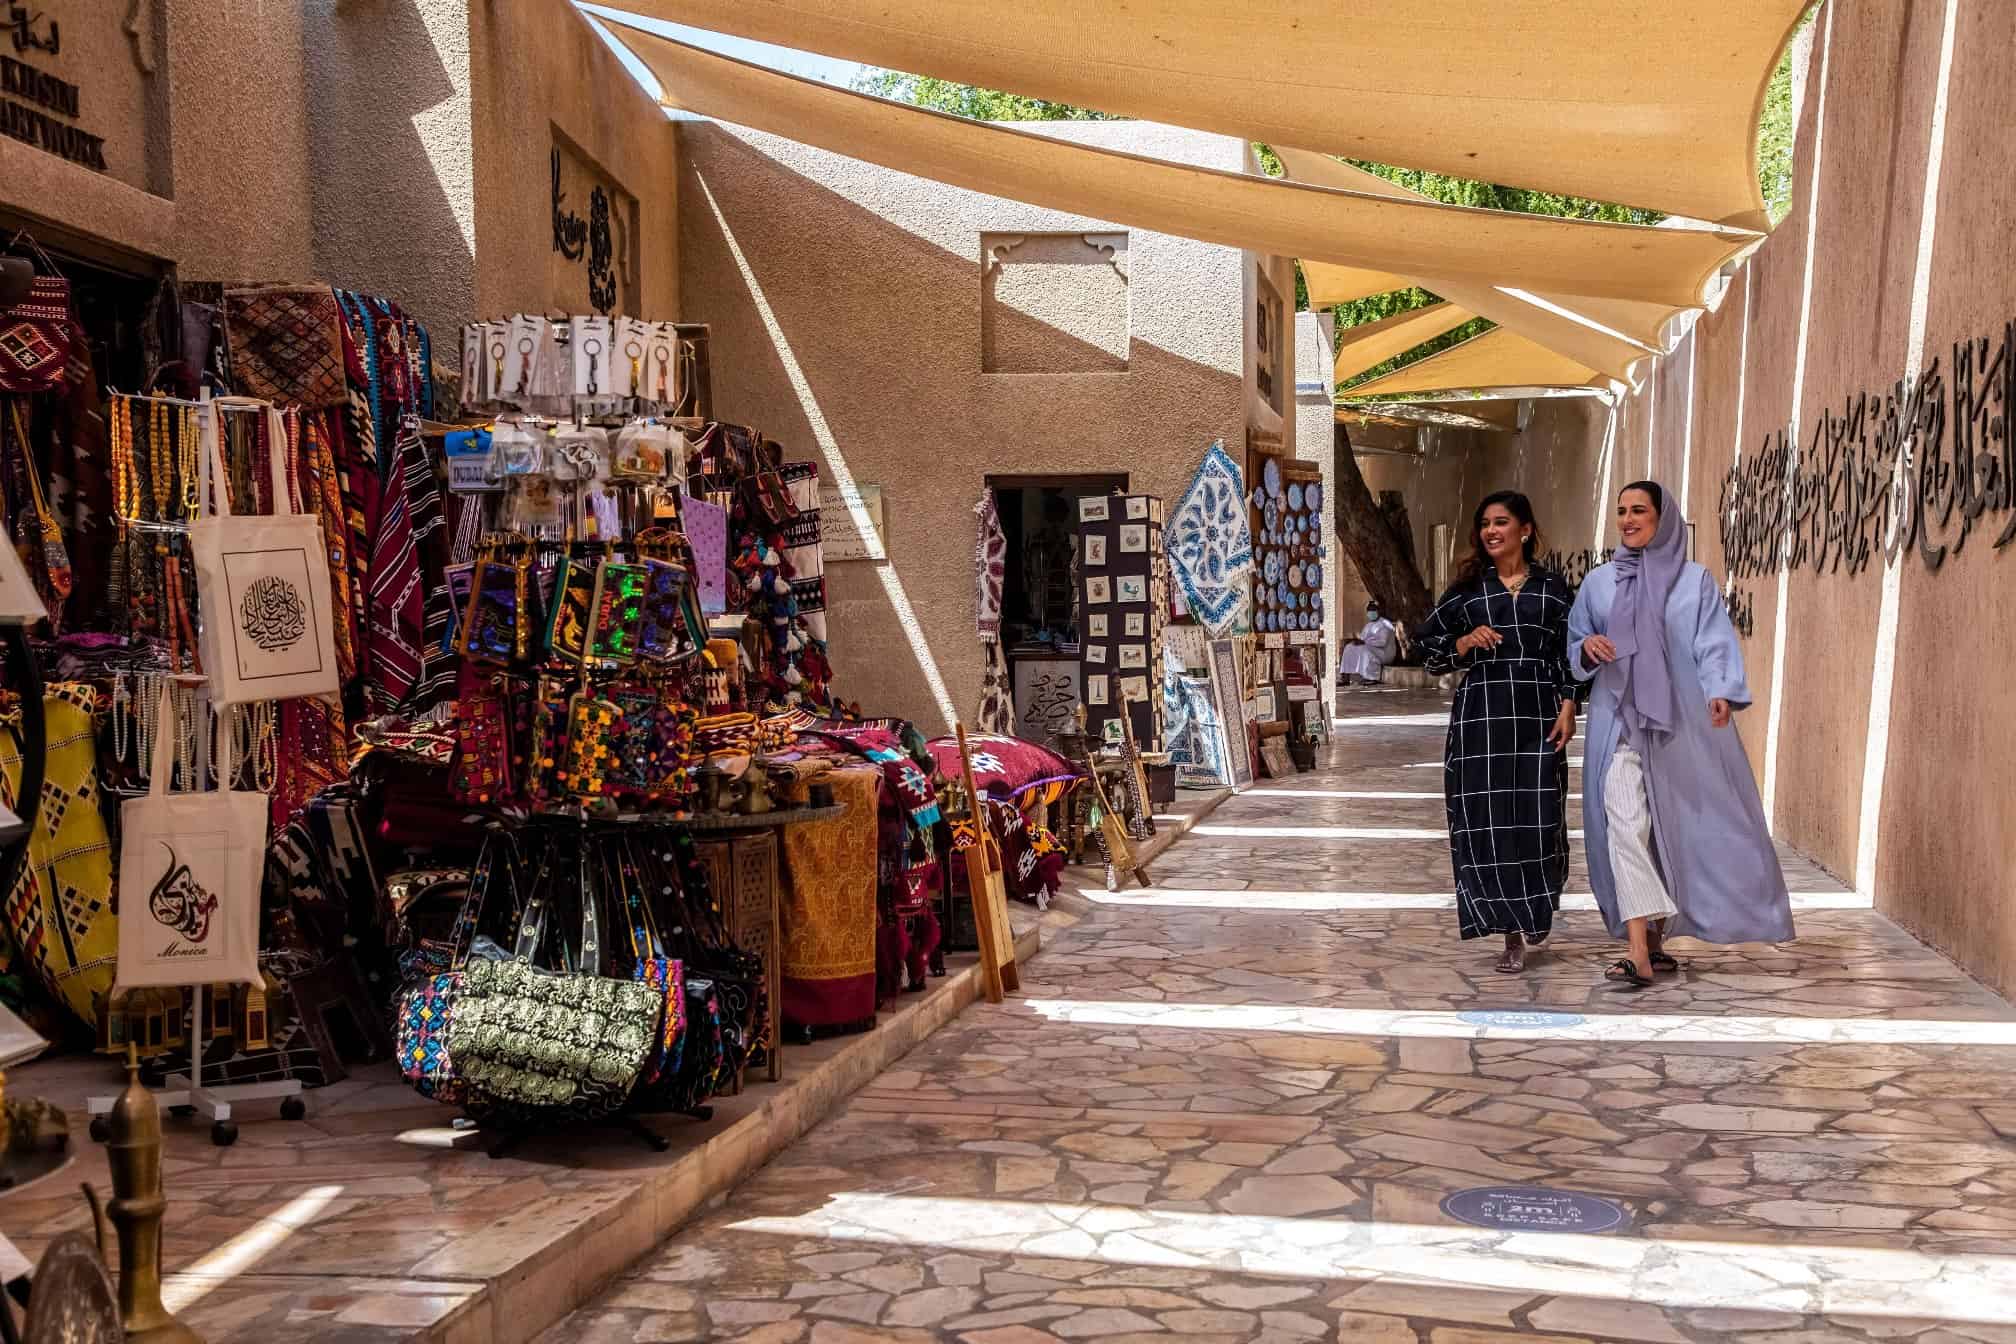 Dubai hija destinazzjoni turistika globali mżejna bl-atmosfera tar-Ramadan tagħha